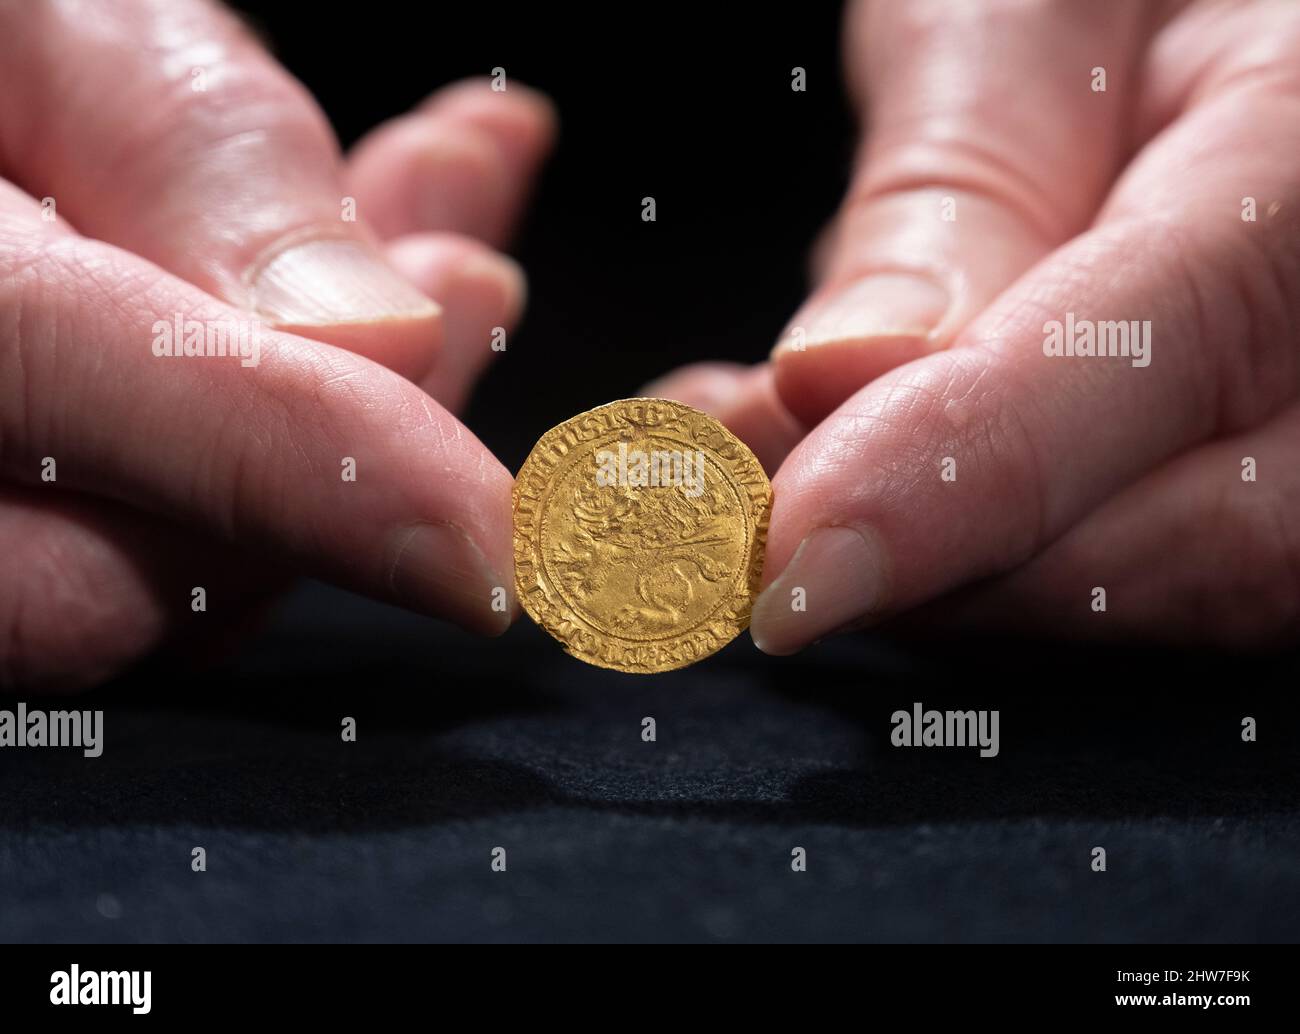 Dix Noonan Webb, London, Großbritannien. 4. März 2022. Drei Goldschatzfunde, die in zwei bevorstehenden Auktionen bei DNW zum Verkauf angeboten werden, wobei jeder der Finder anwesend ist, um seine Entdeckungen zu zeigen. Einer der „Golden Boys“ ist Andy, ein pensionierter Forscher aus Norfolk, mit seiner Leopard-Goldmünze, einer seltenen 23-Karat-Münze aus dem 14.. Jahrhundert aus der Regierungszeit von König Edward III., die 140.000 £schätzt. Die Münzen werden am 8./9. März bei DNW verkauft. Quelle: Malcolm Park/Alamy Live News Stockfoto